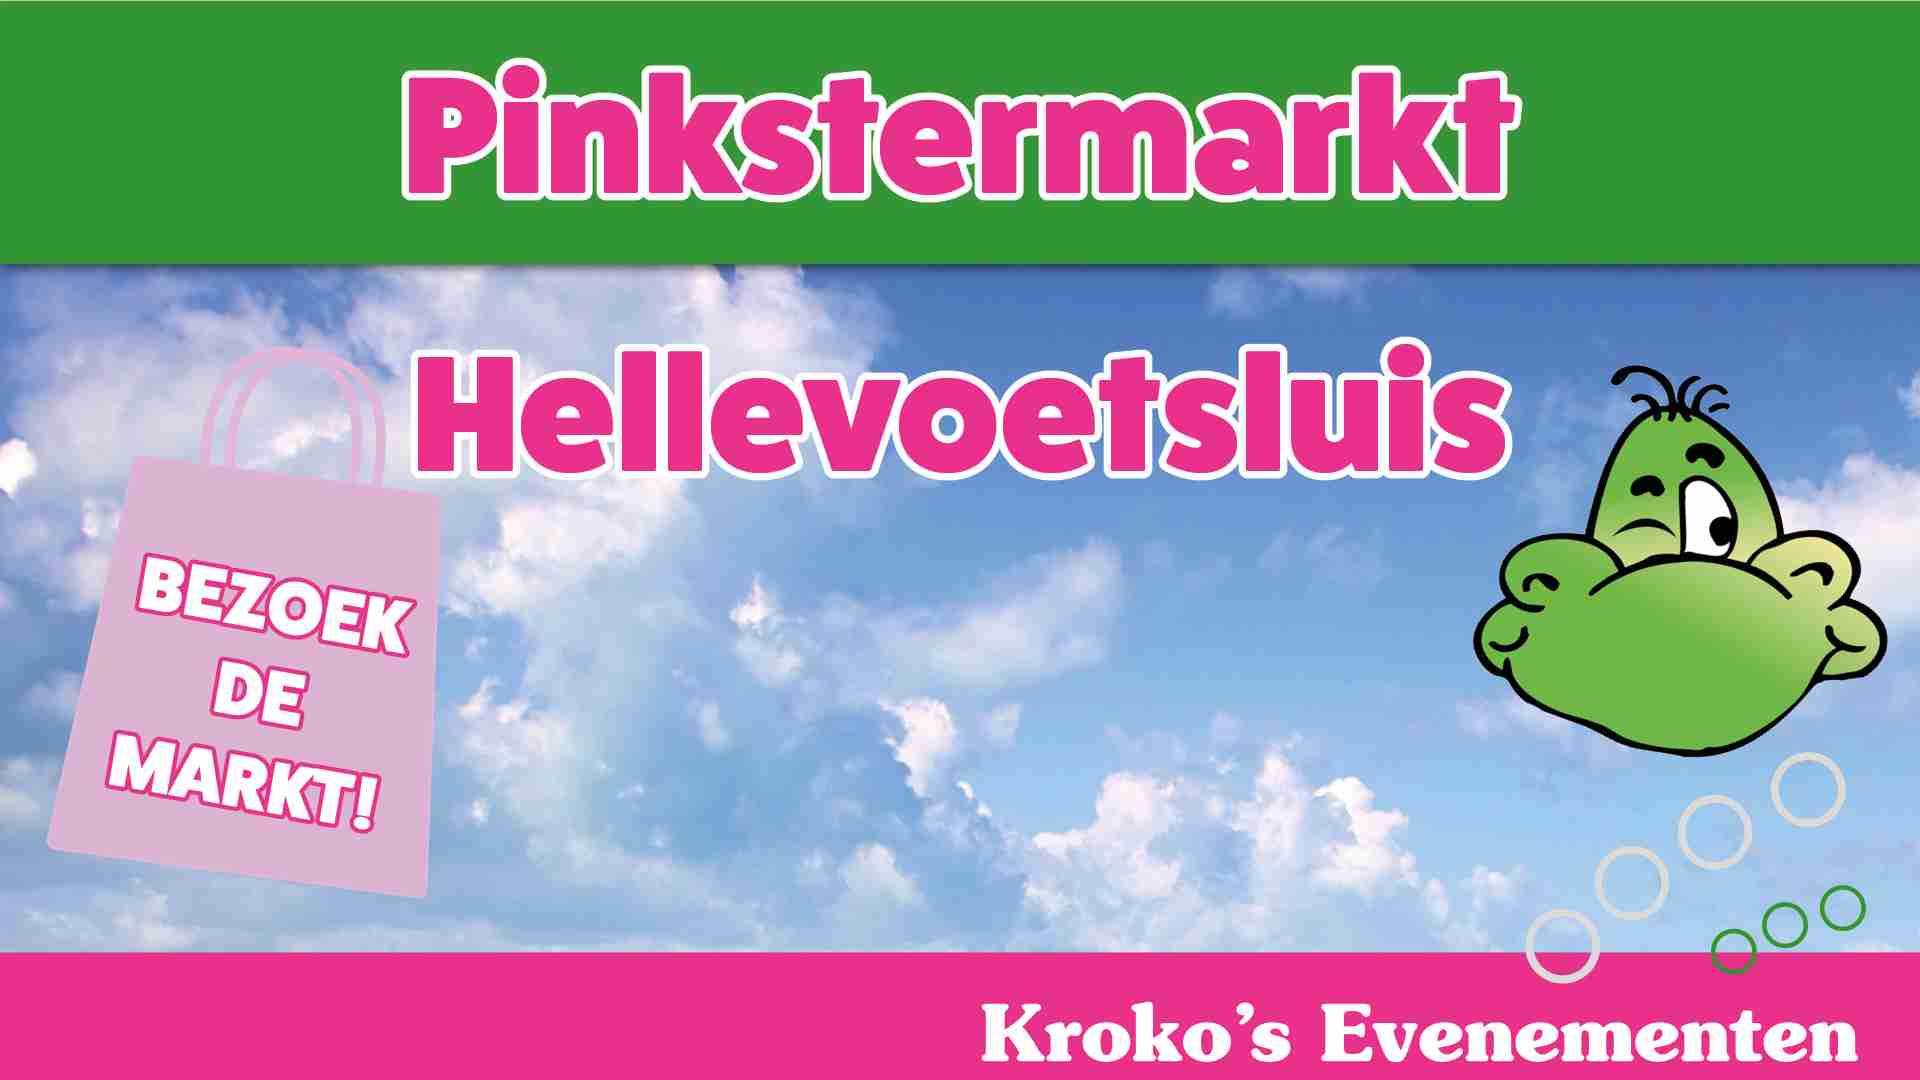 Pinkstermarkt